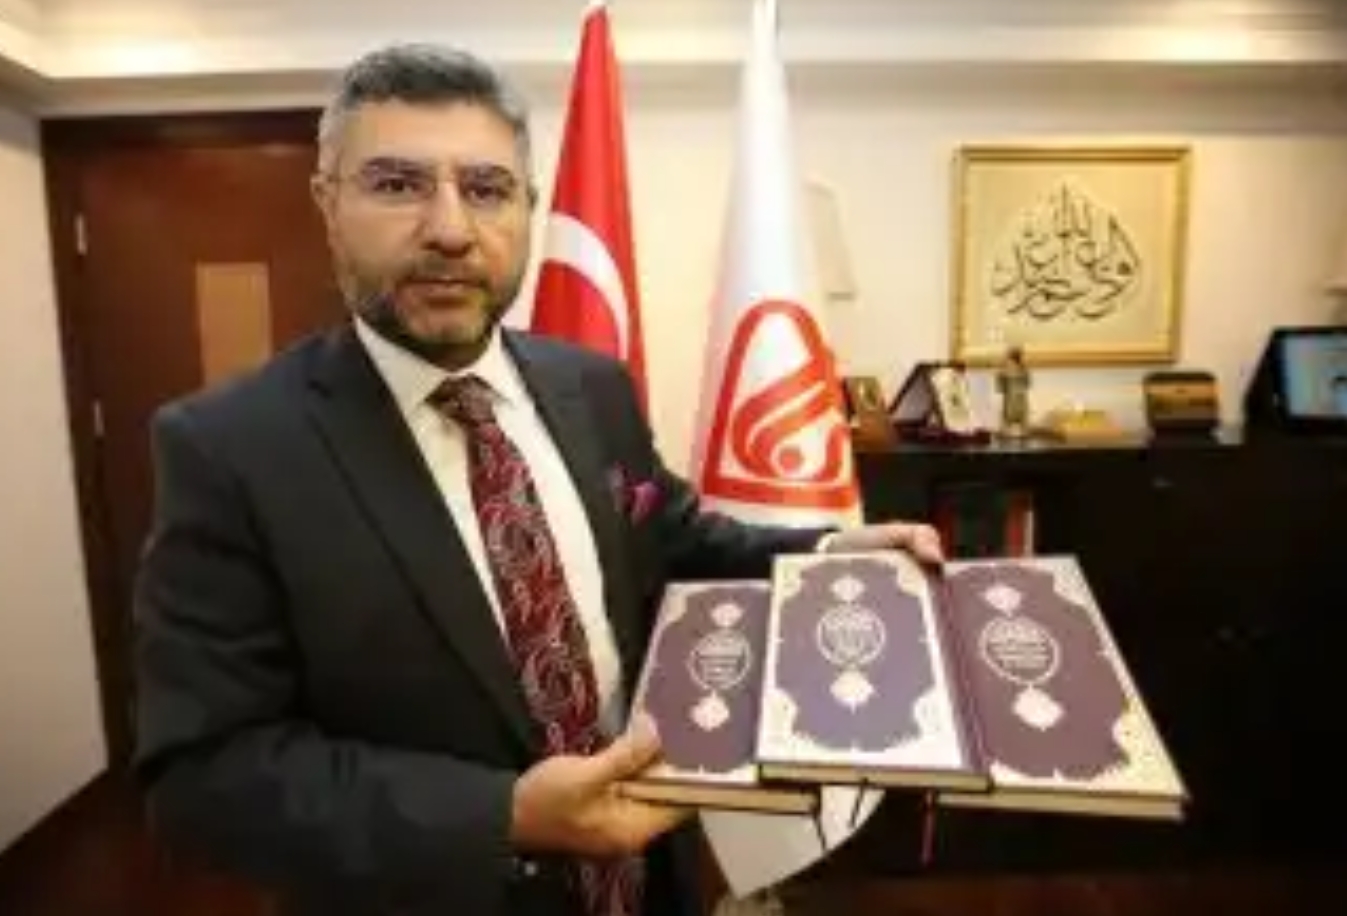 وقف الديانة التركي يوزع نسخا من معاني القرآن الكريم بـ 12 لغة وفي 15 دولة